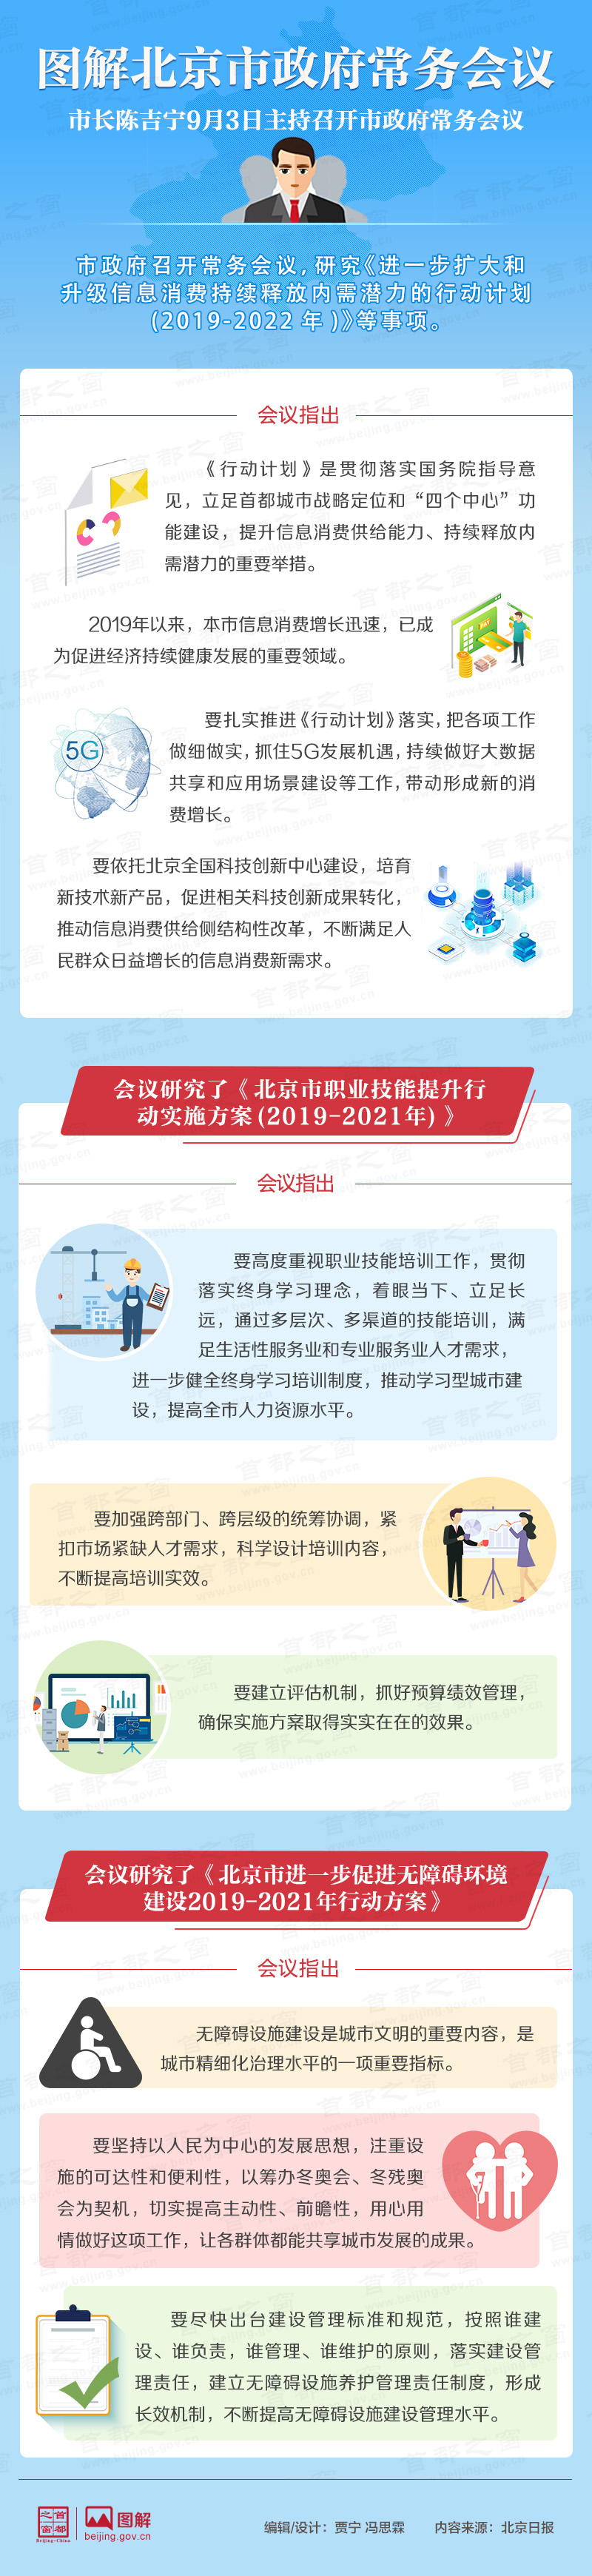 圖解2019年9月3日北京市政府常務會議